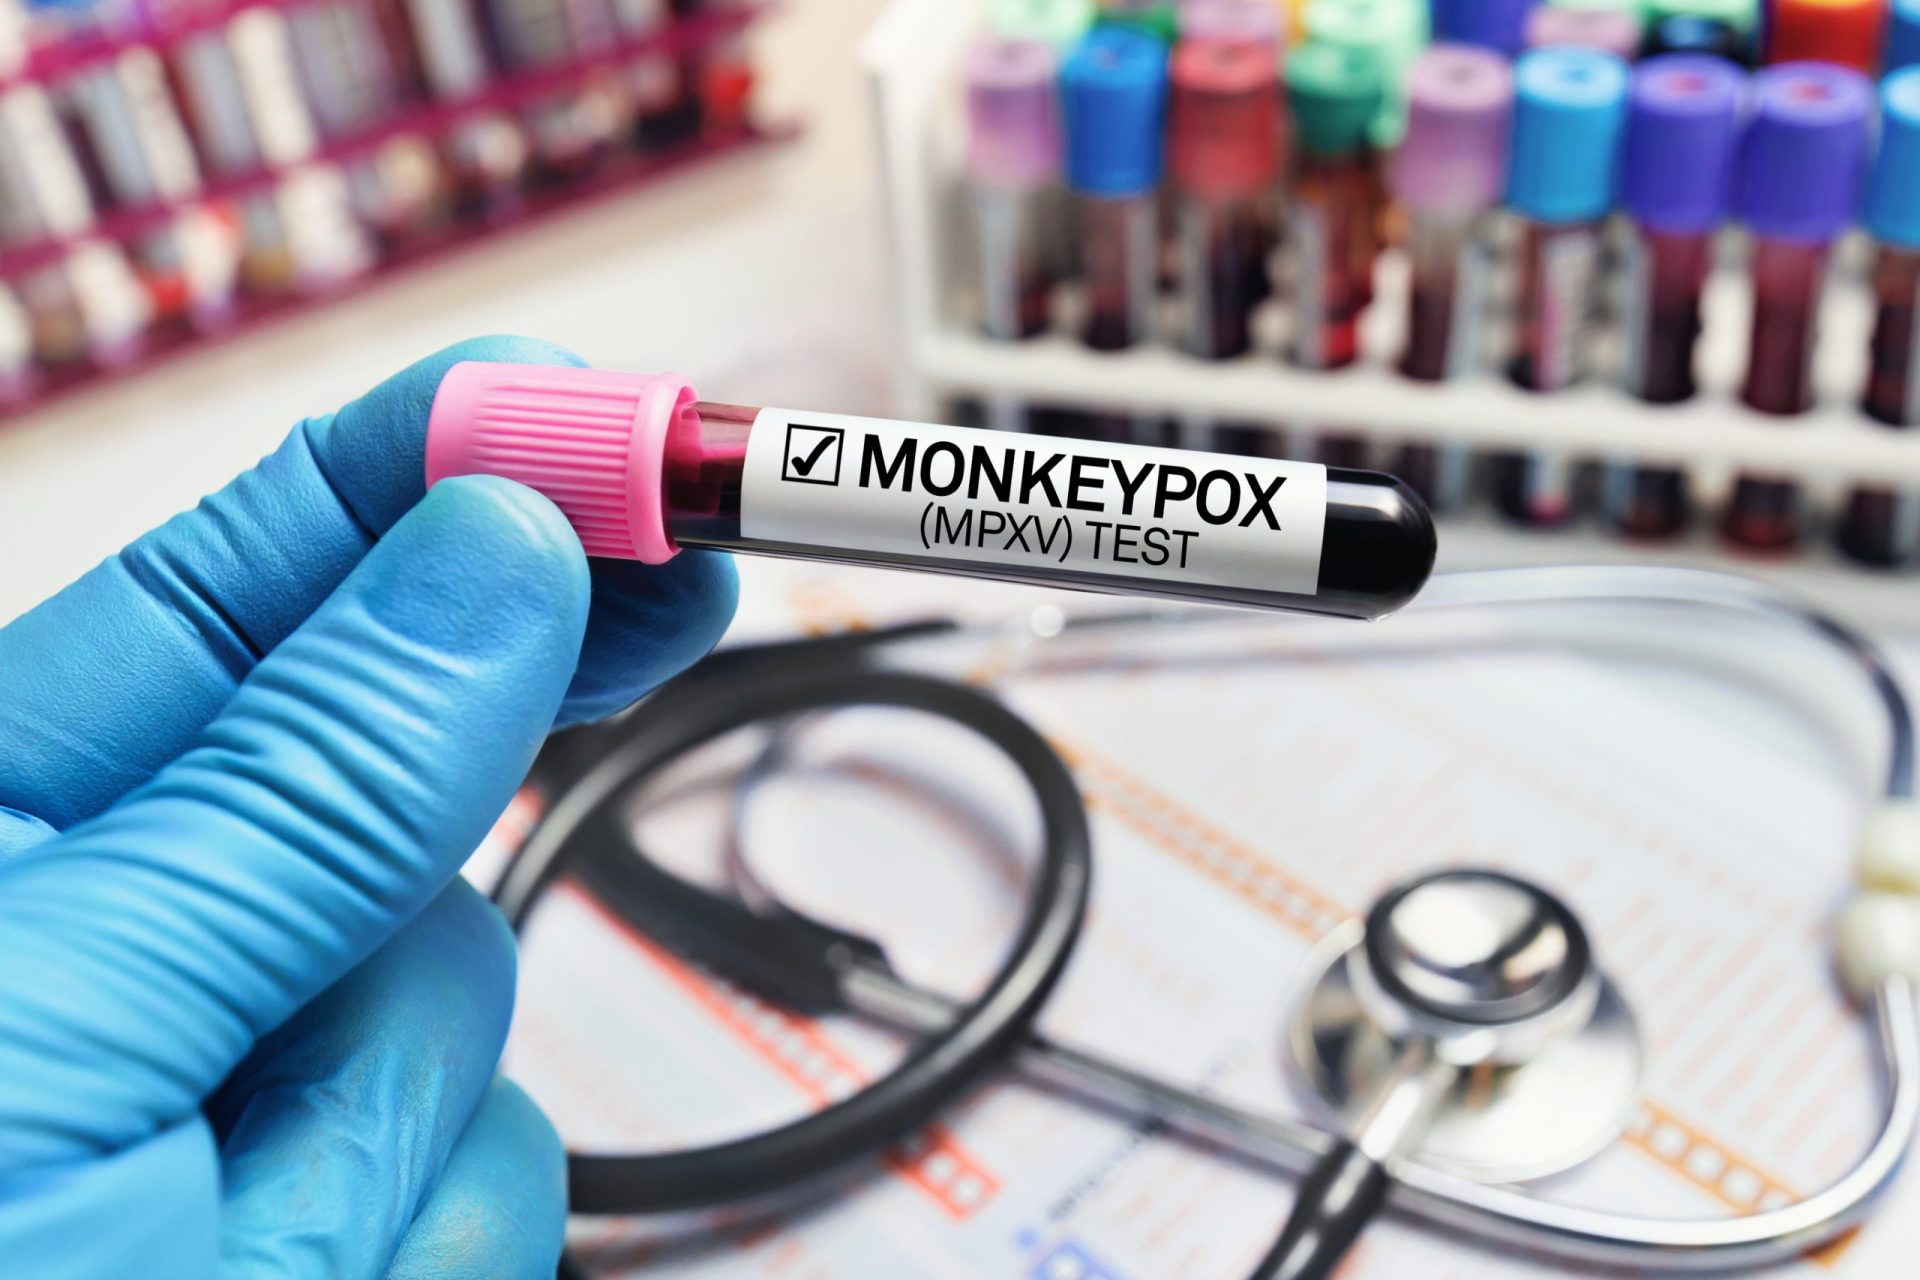 OMS preocupada com surto de Monkeypox apela que Europa adote medidas urgentes